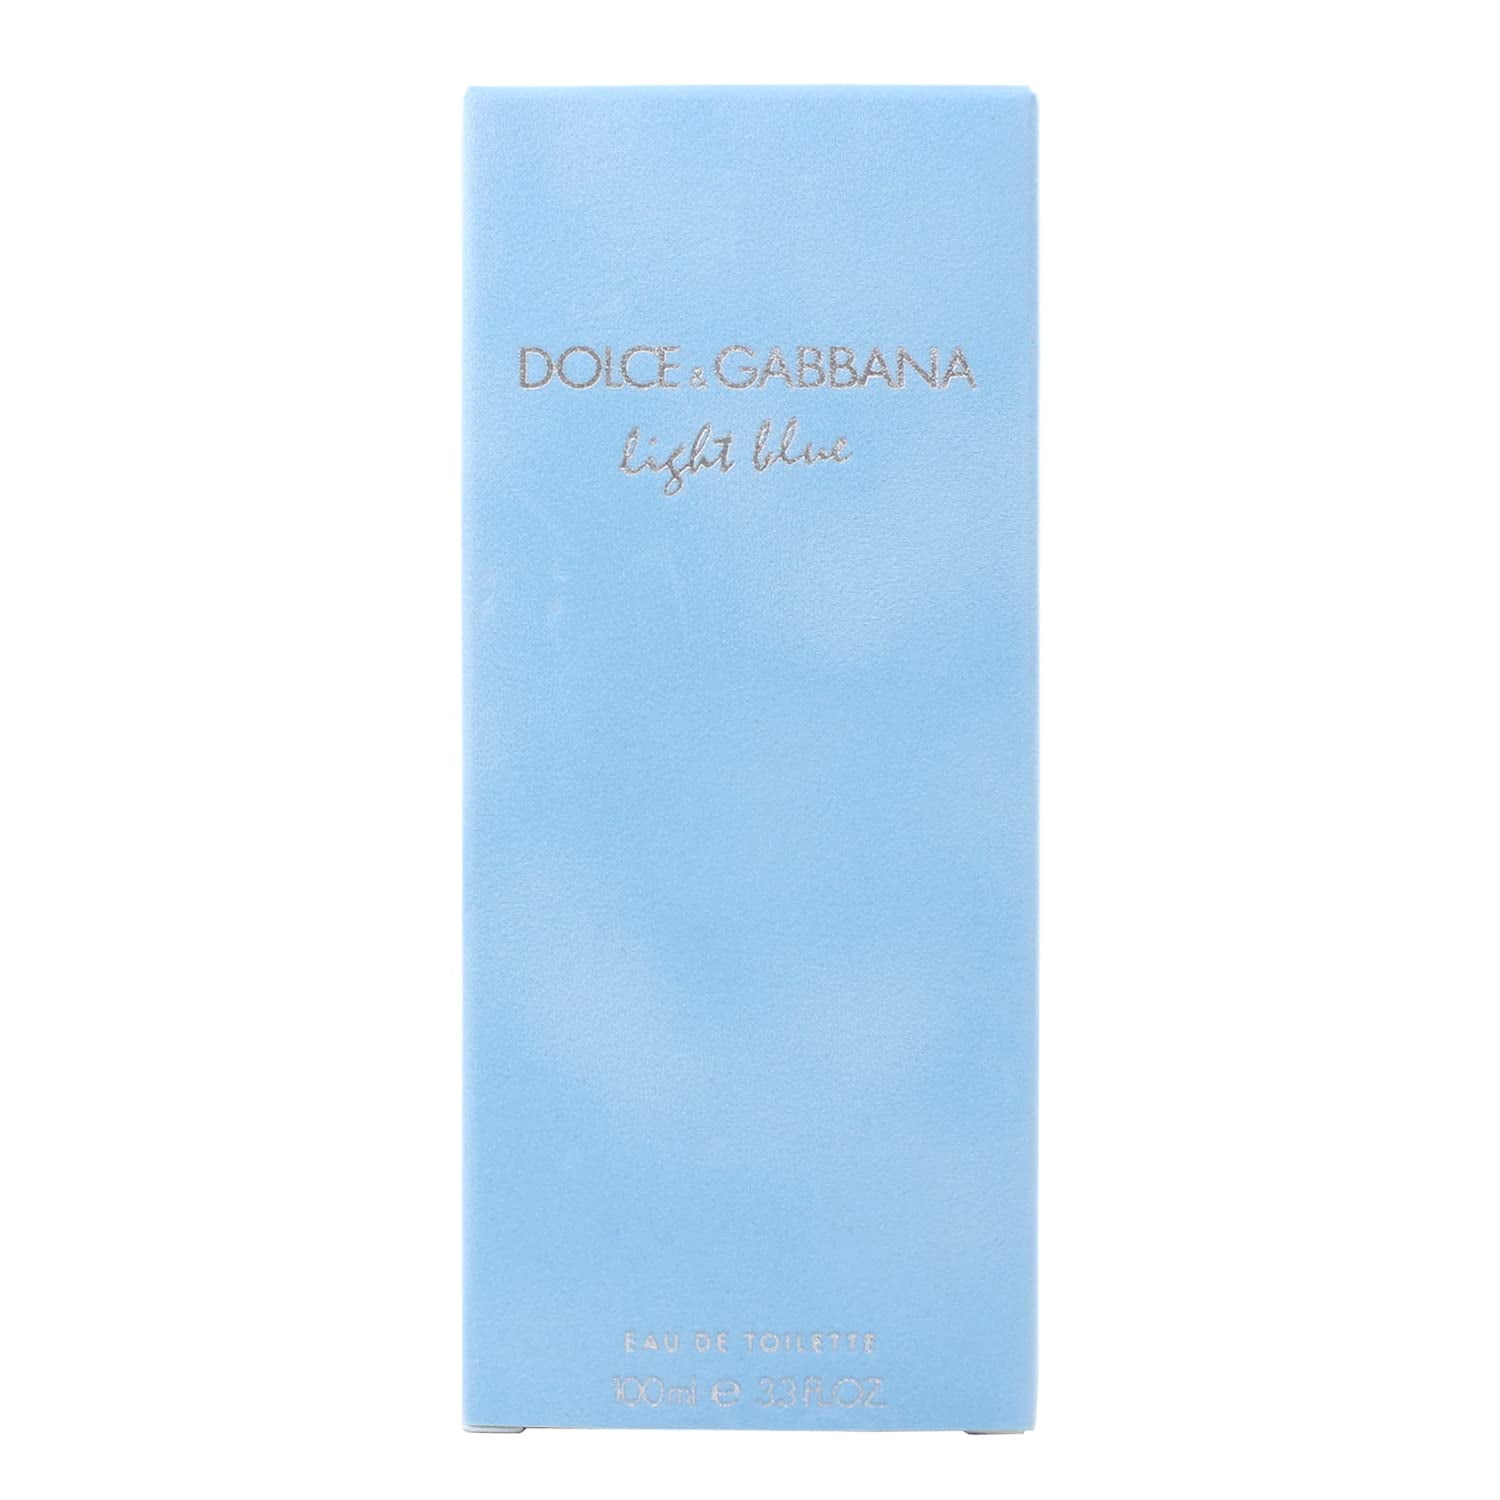 Dolce & Gabbana Light Blue for Women Eau de Toilette Spray, 3.3oz *EN ...